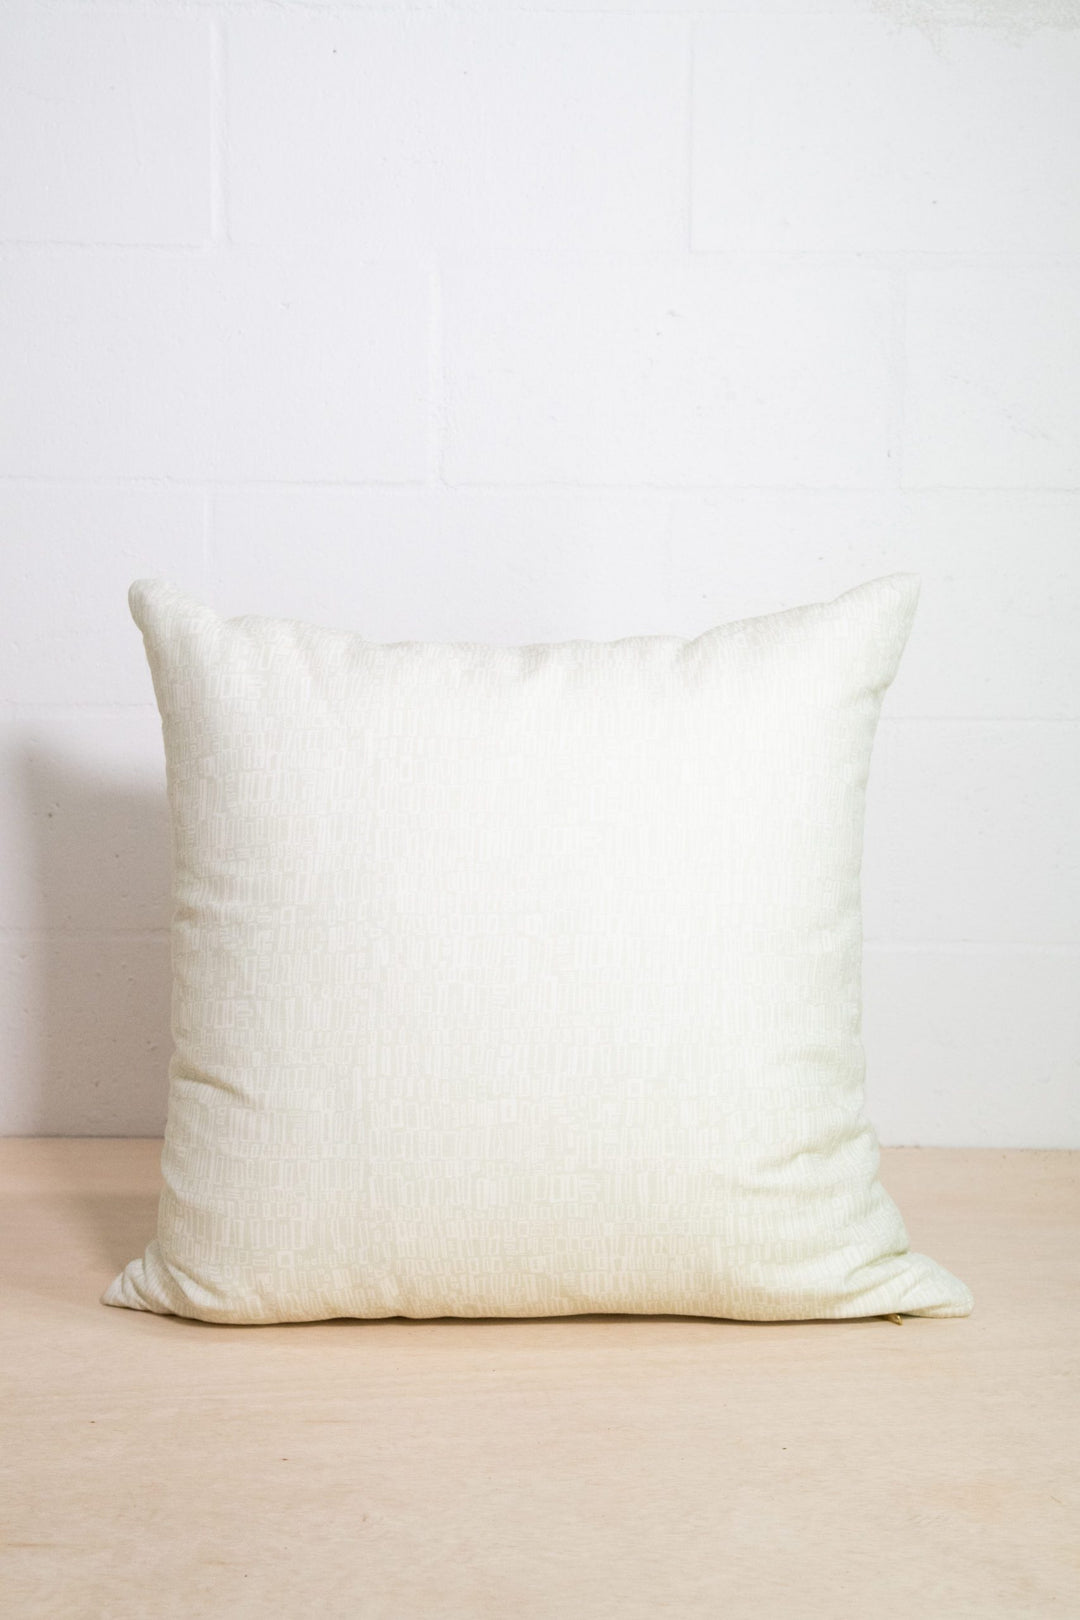 Leucadia in Eleuthera 24" x 24" Pillow